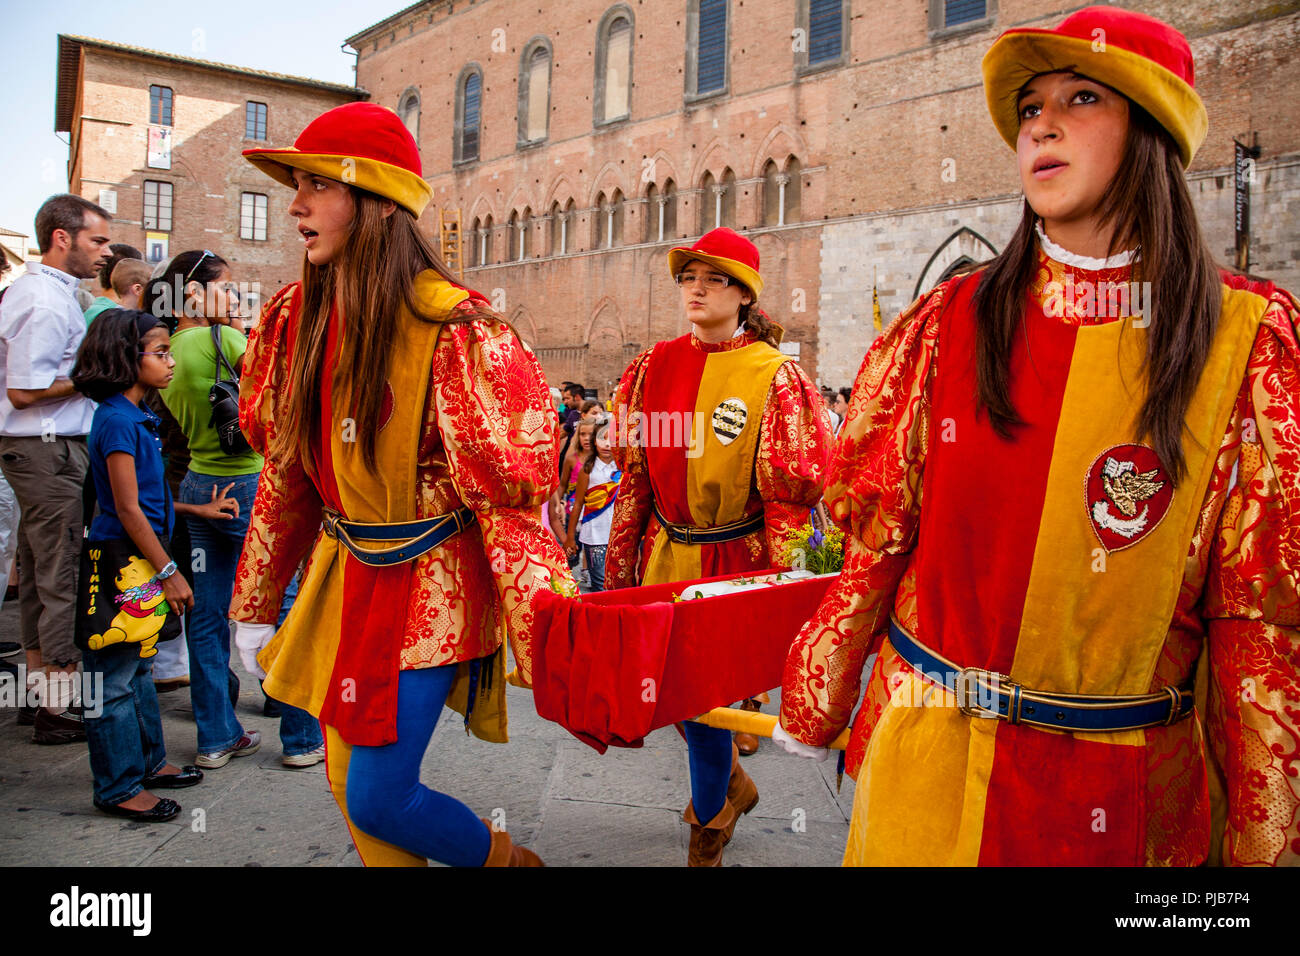 Contrada Children Take Part In The Cero Votivo Procession, The Palio di Siena, Siena, Italy Stock Photo